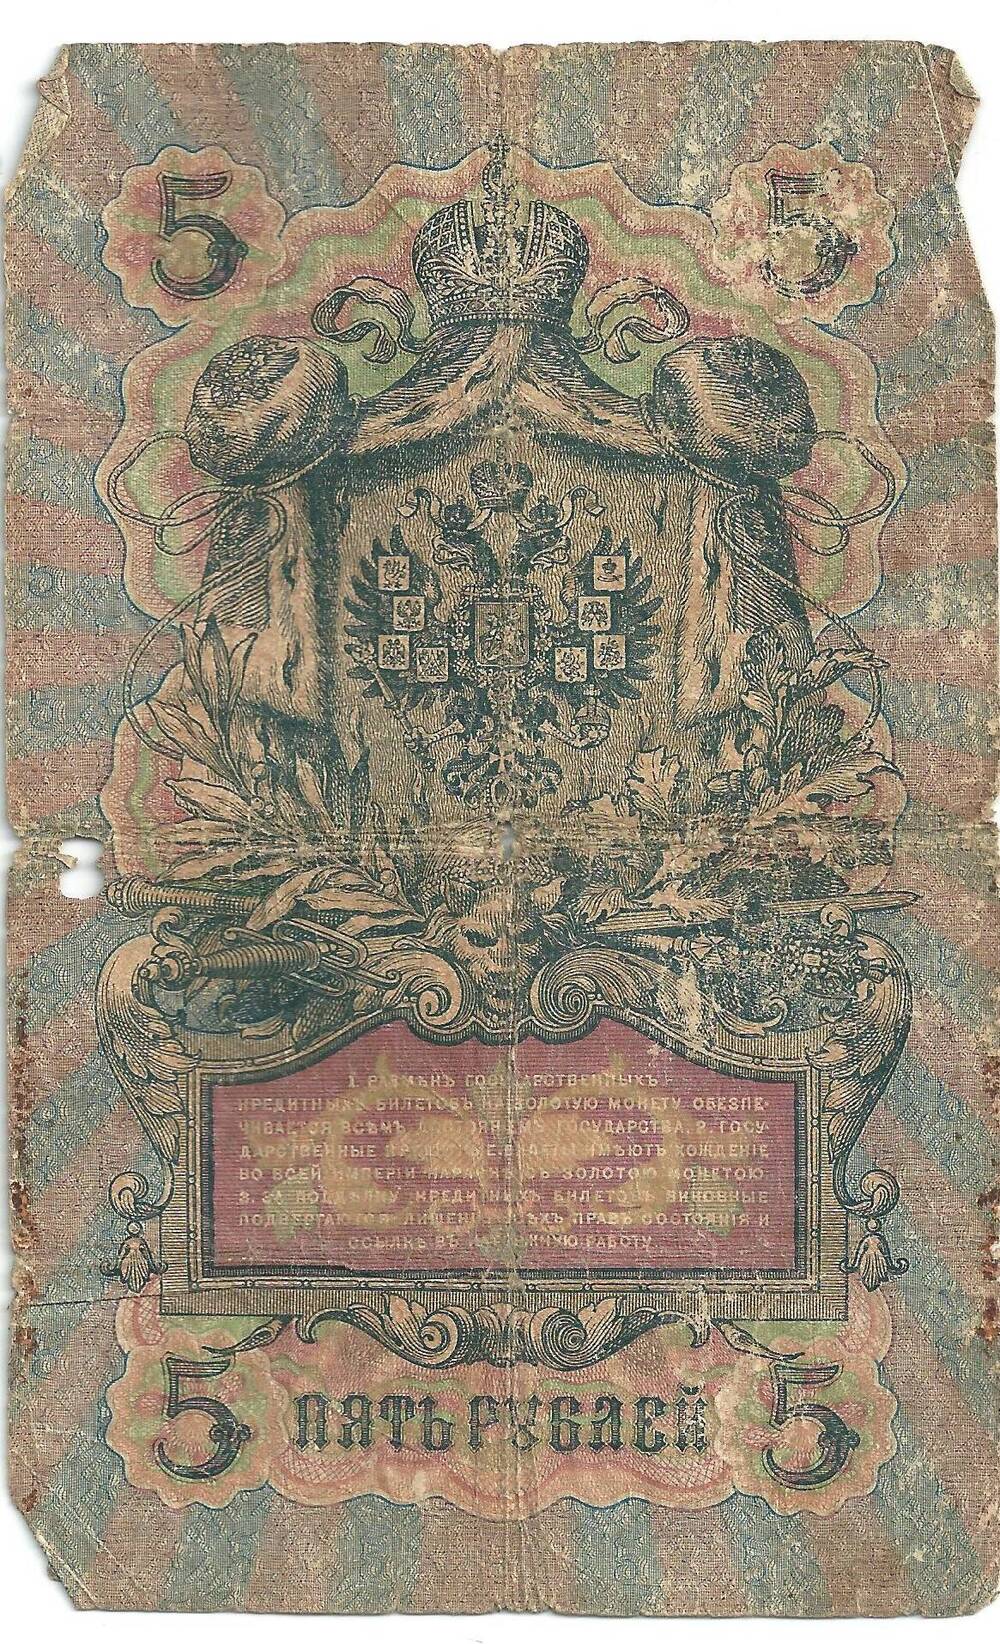 Купюра денежная. Государственный кредитный билет достоинством 5 рублей 1909 года